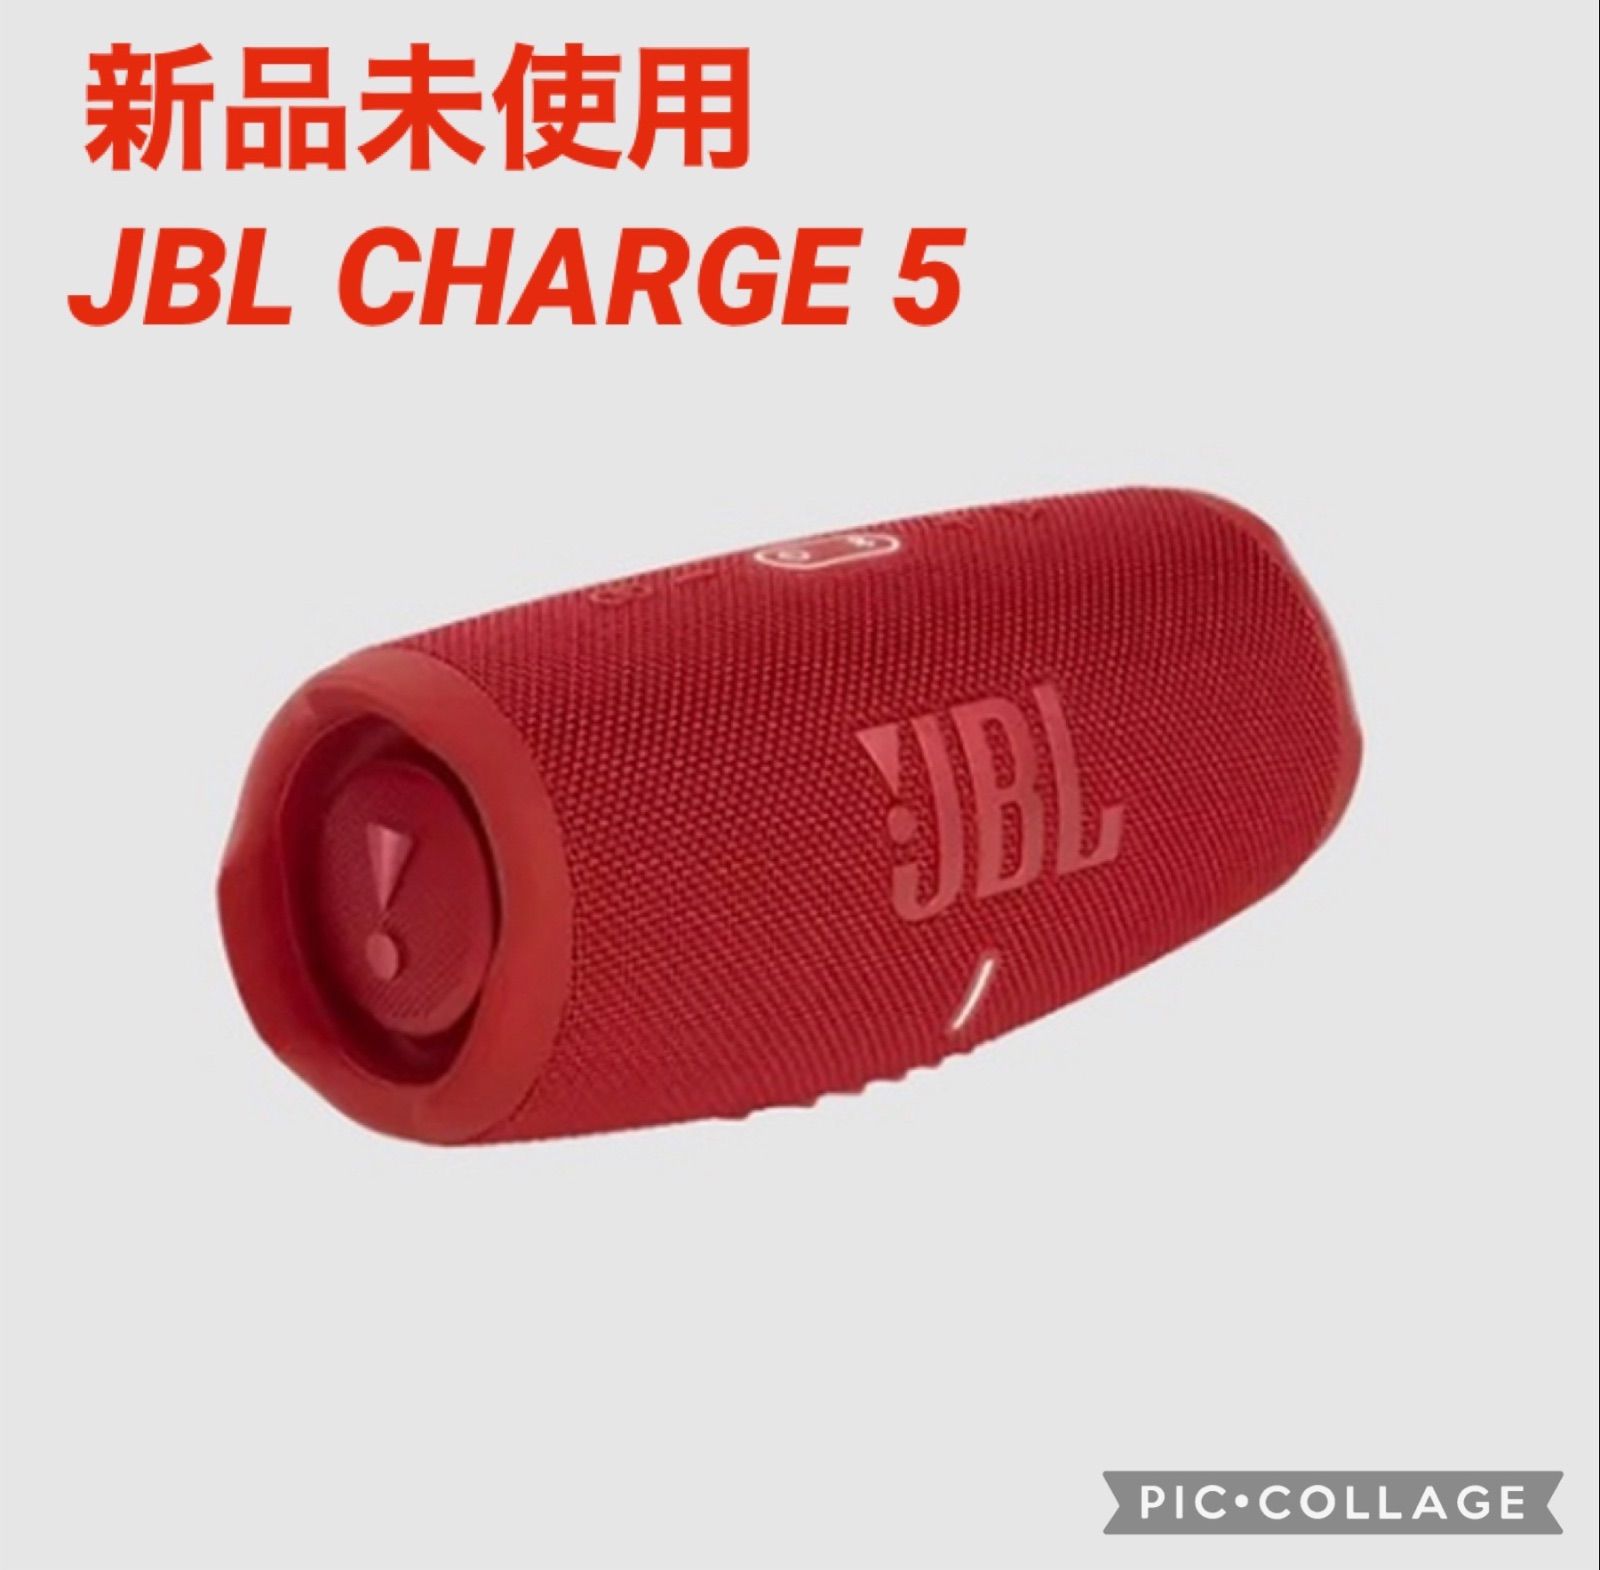 JBL CHARGE 5 新品未使用新品未使用未開封